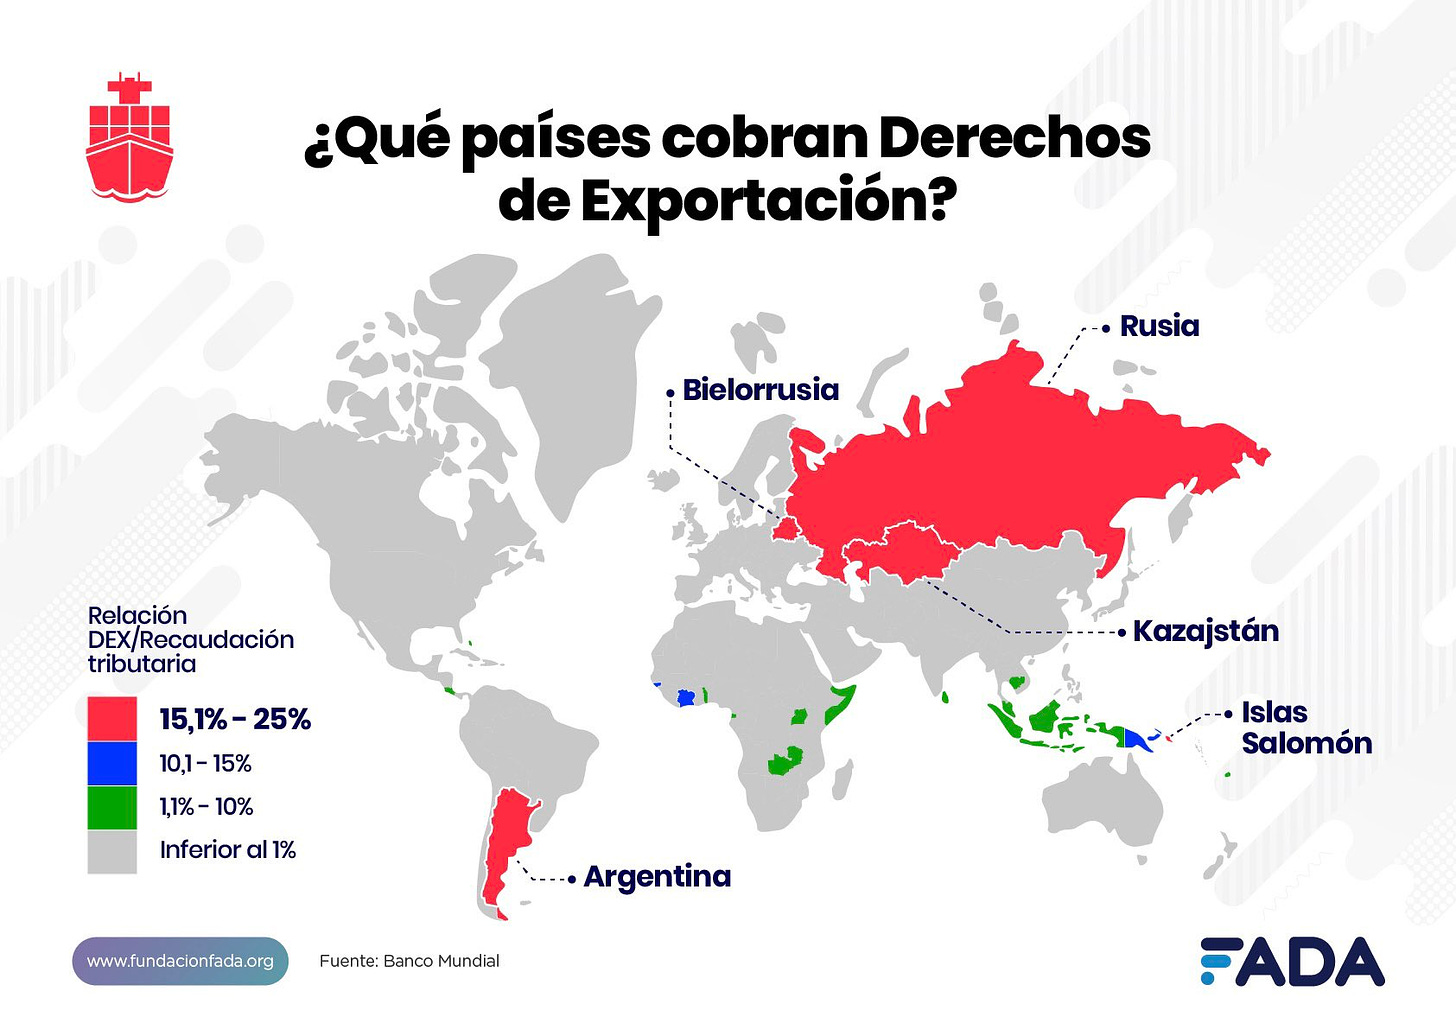 María Eugenia Vidal on X: "Según el Banco Mundial, solamente 33 países  tienen vigentes retenciones a las exportaciones. De estos 33, 25 contaban  con una tasa inferior al 1%. Sólo cinco países